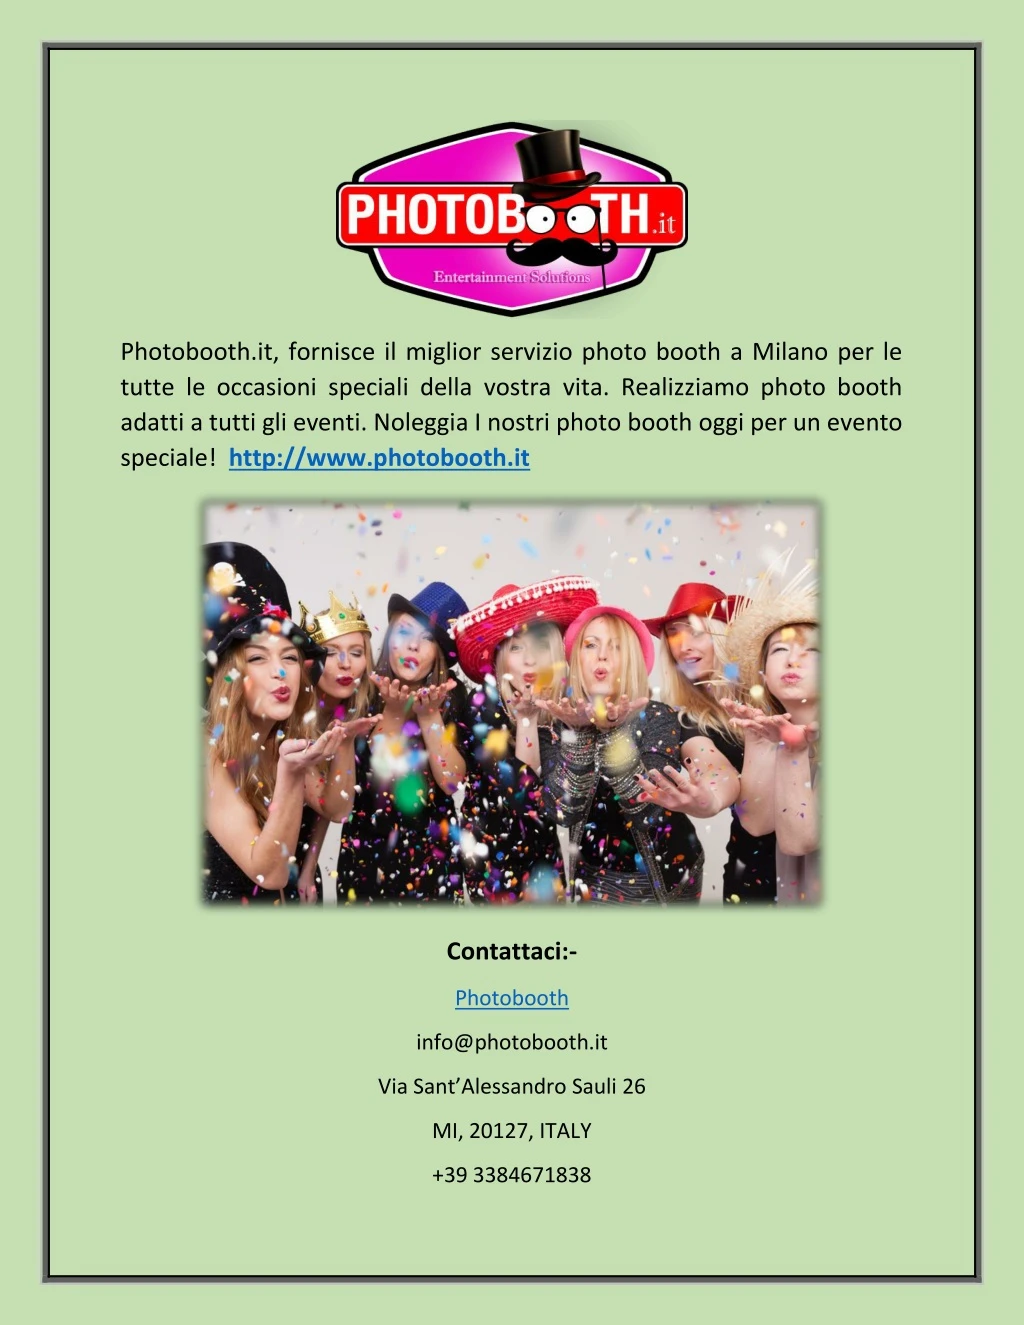 photobooth it fornisce il miglior servizio photo